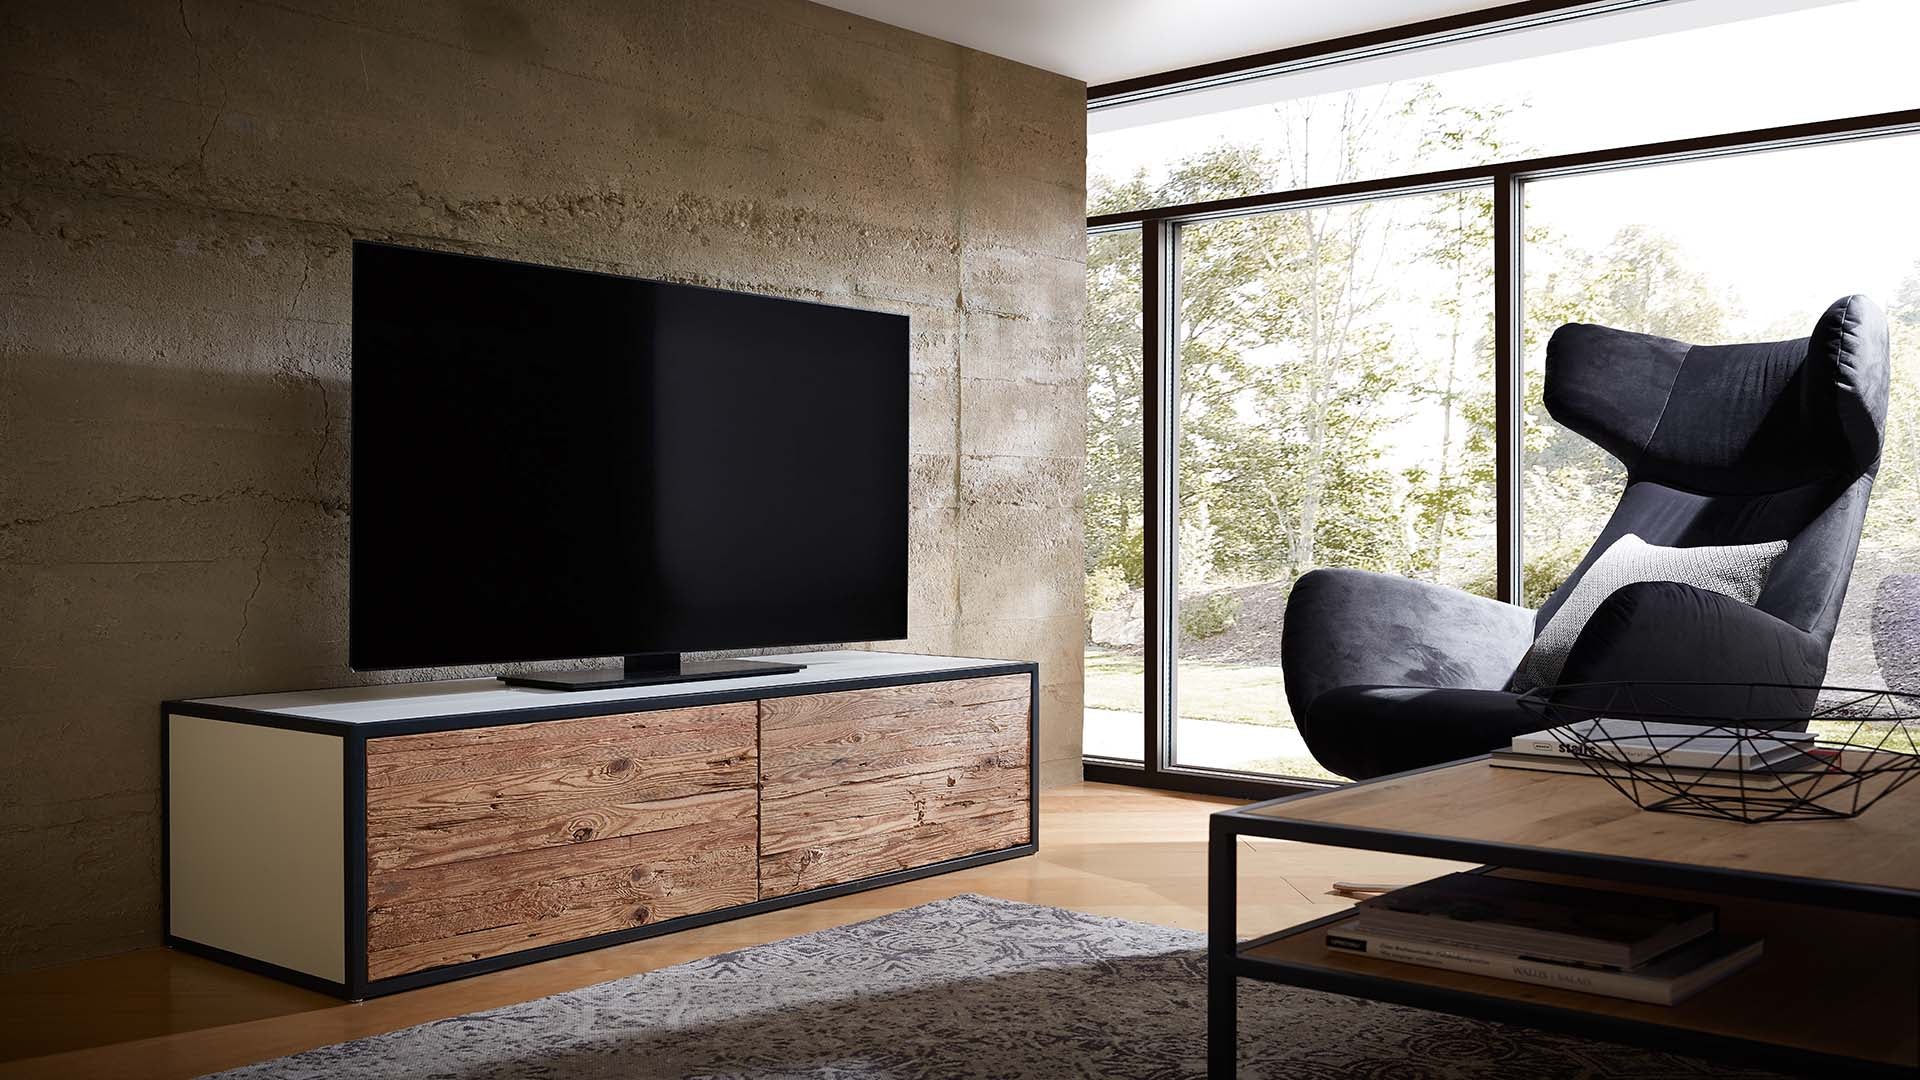 h-design-meran-wohnzimmer-wohnwand-regal-tv-board-lowboard-couchtisch-metall-holz-farbe-weiss